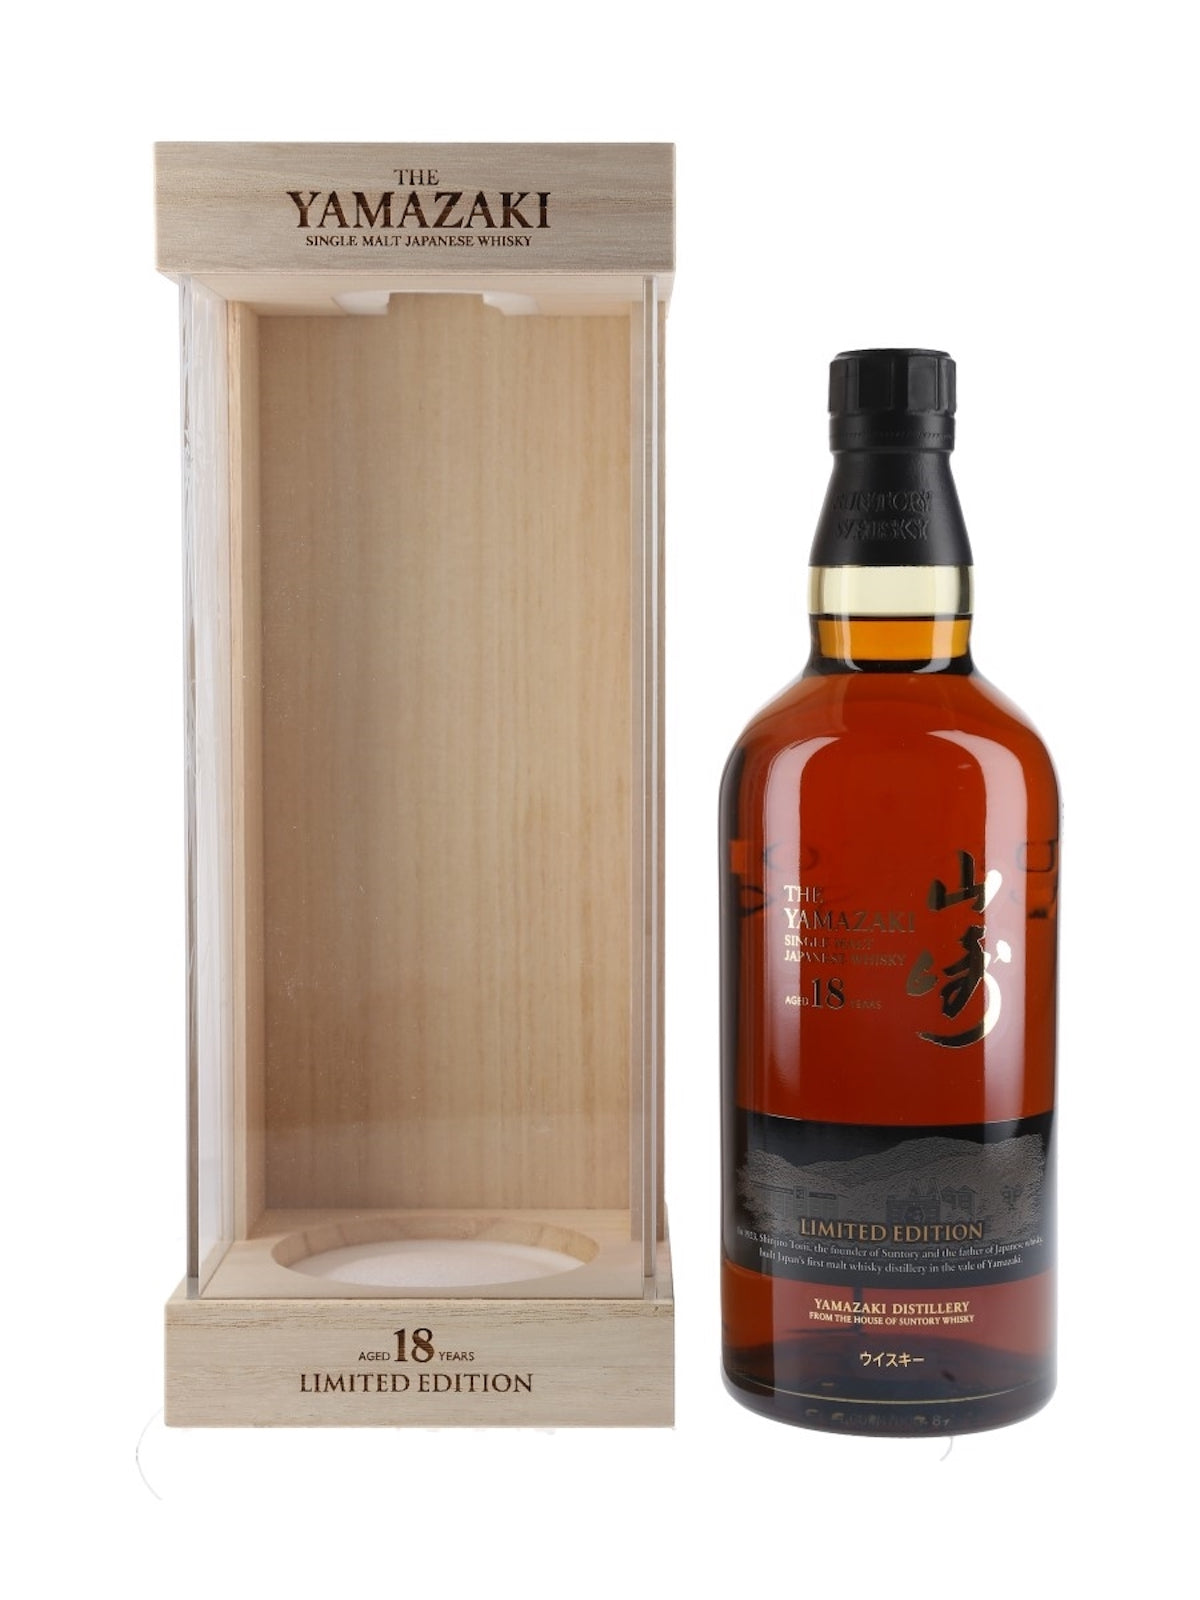 Buy Yamazaki 18 Year Old Japanese Whisky